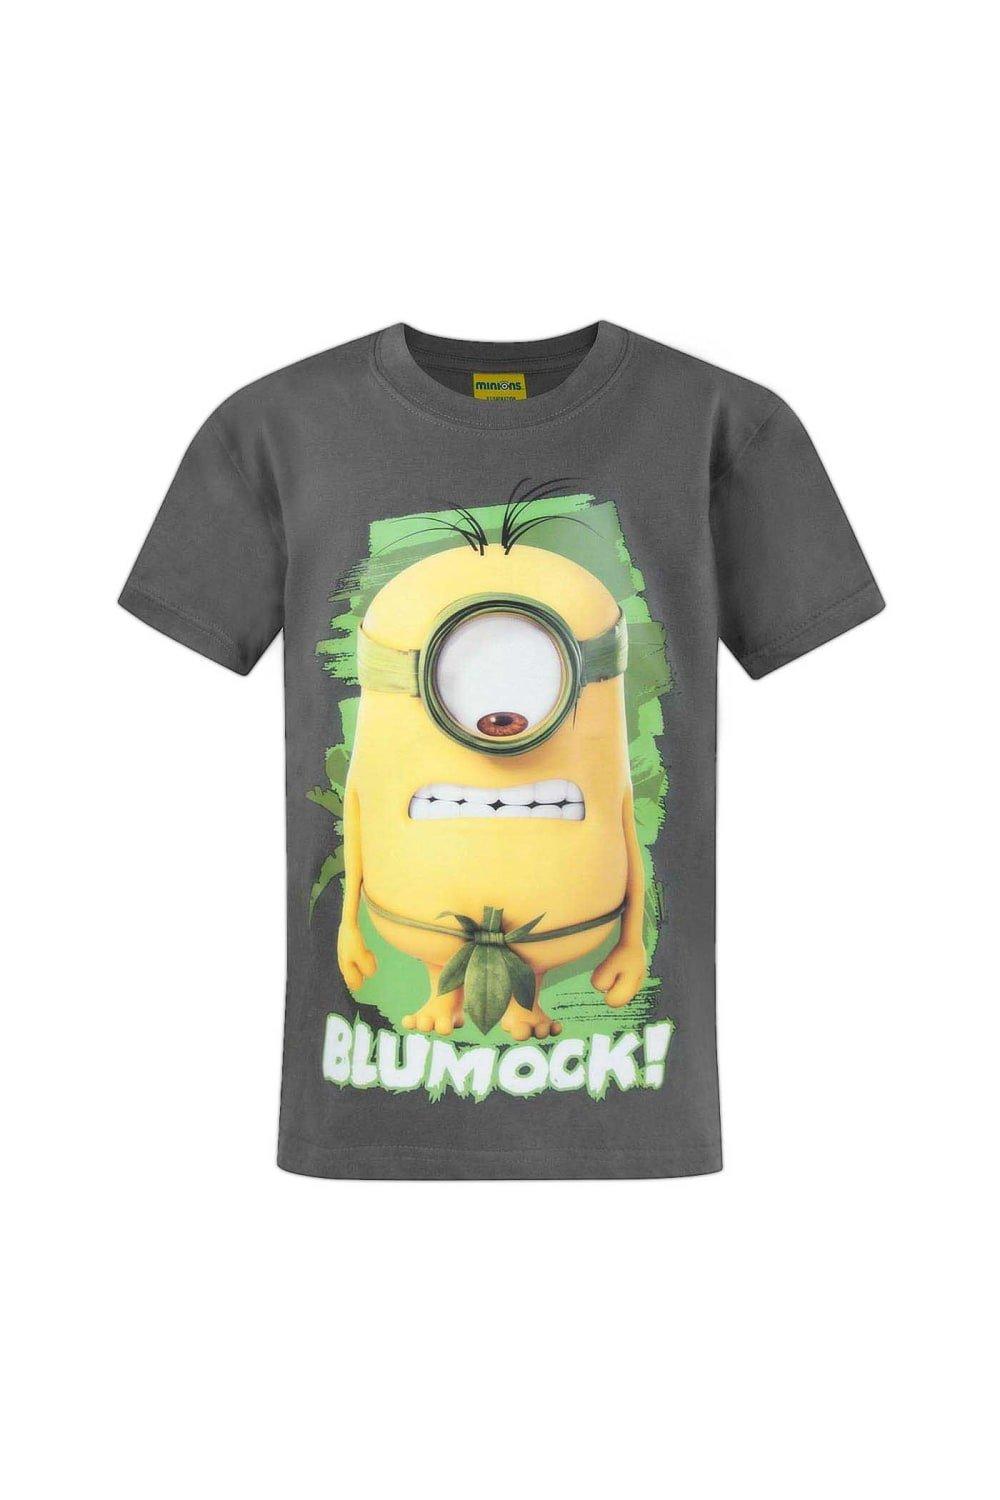 Official Blumock T-Shirt